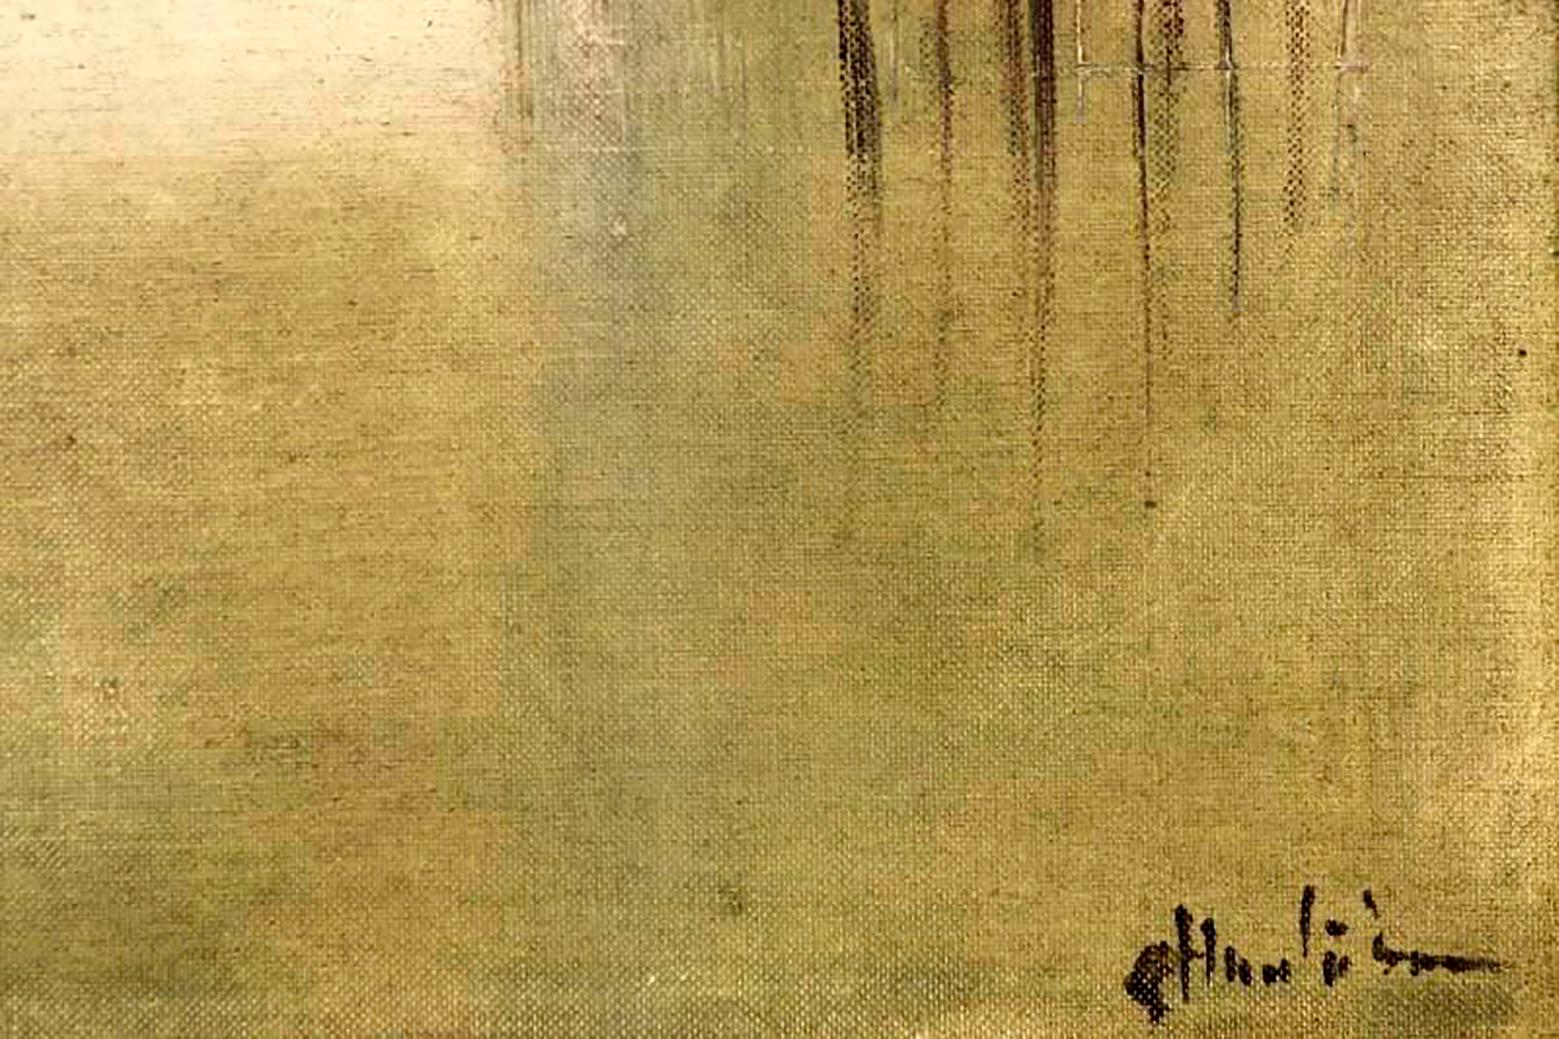 Houses And River-Large - Paysage impressionniste - Huile sur toile signée A.Huntington - Impressionnisme Painting par A. Huntington